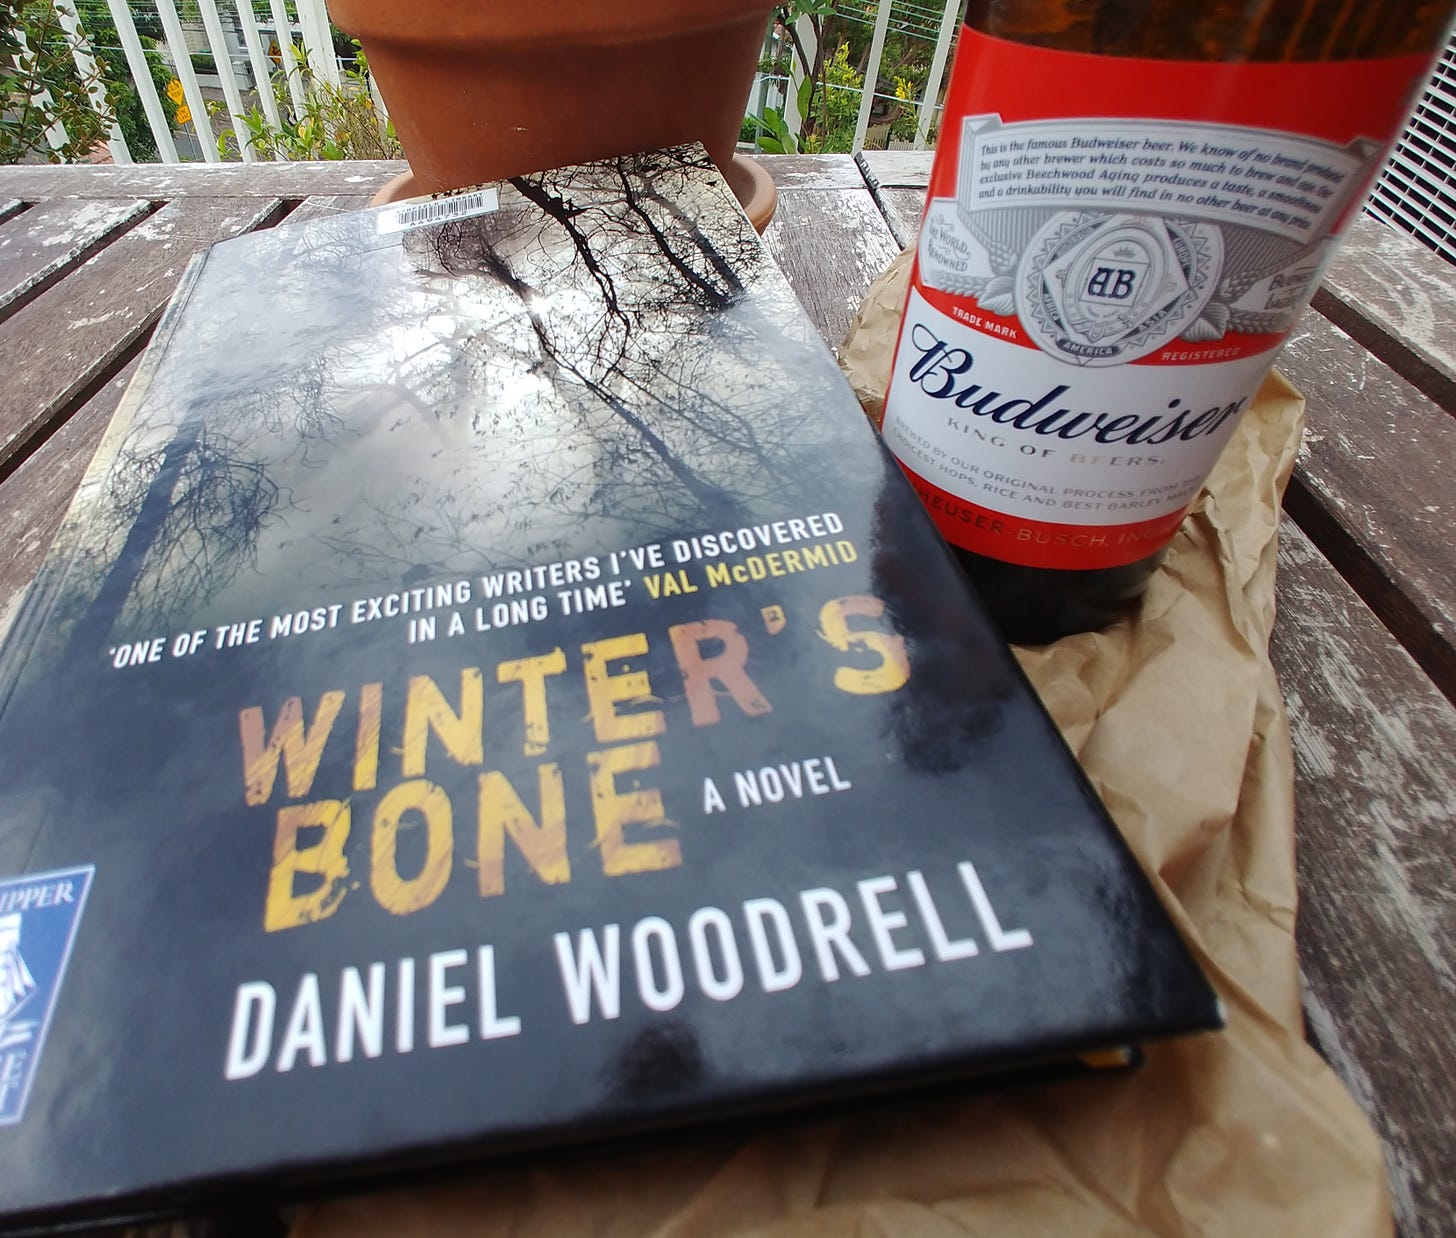 Daniel Woodrell's Winter's Bone and a Budweiser